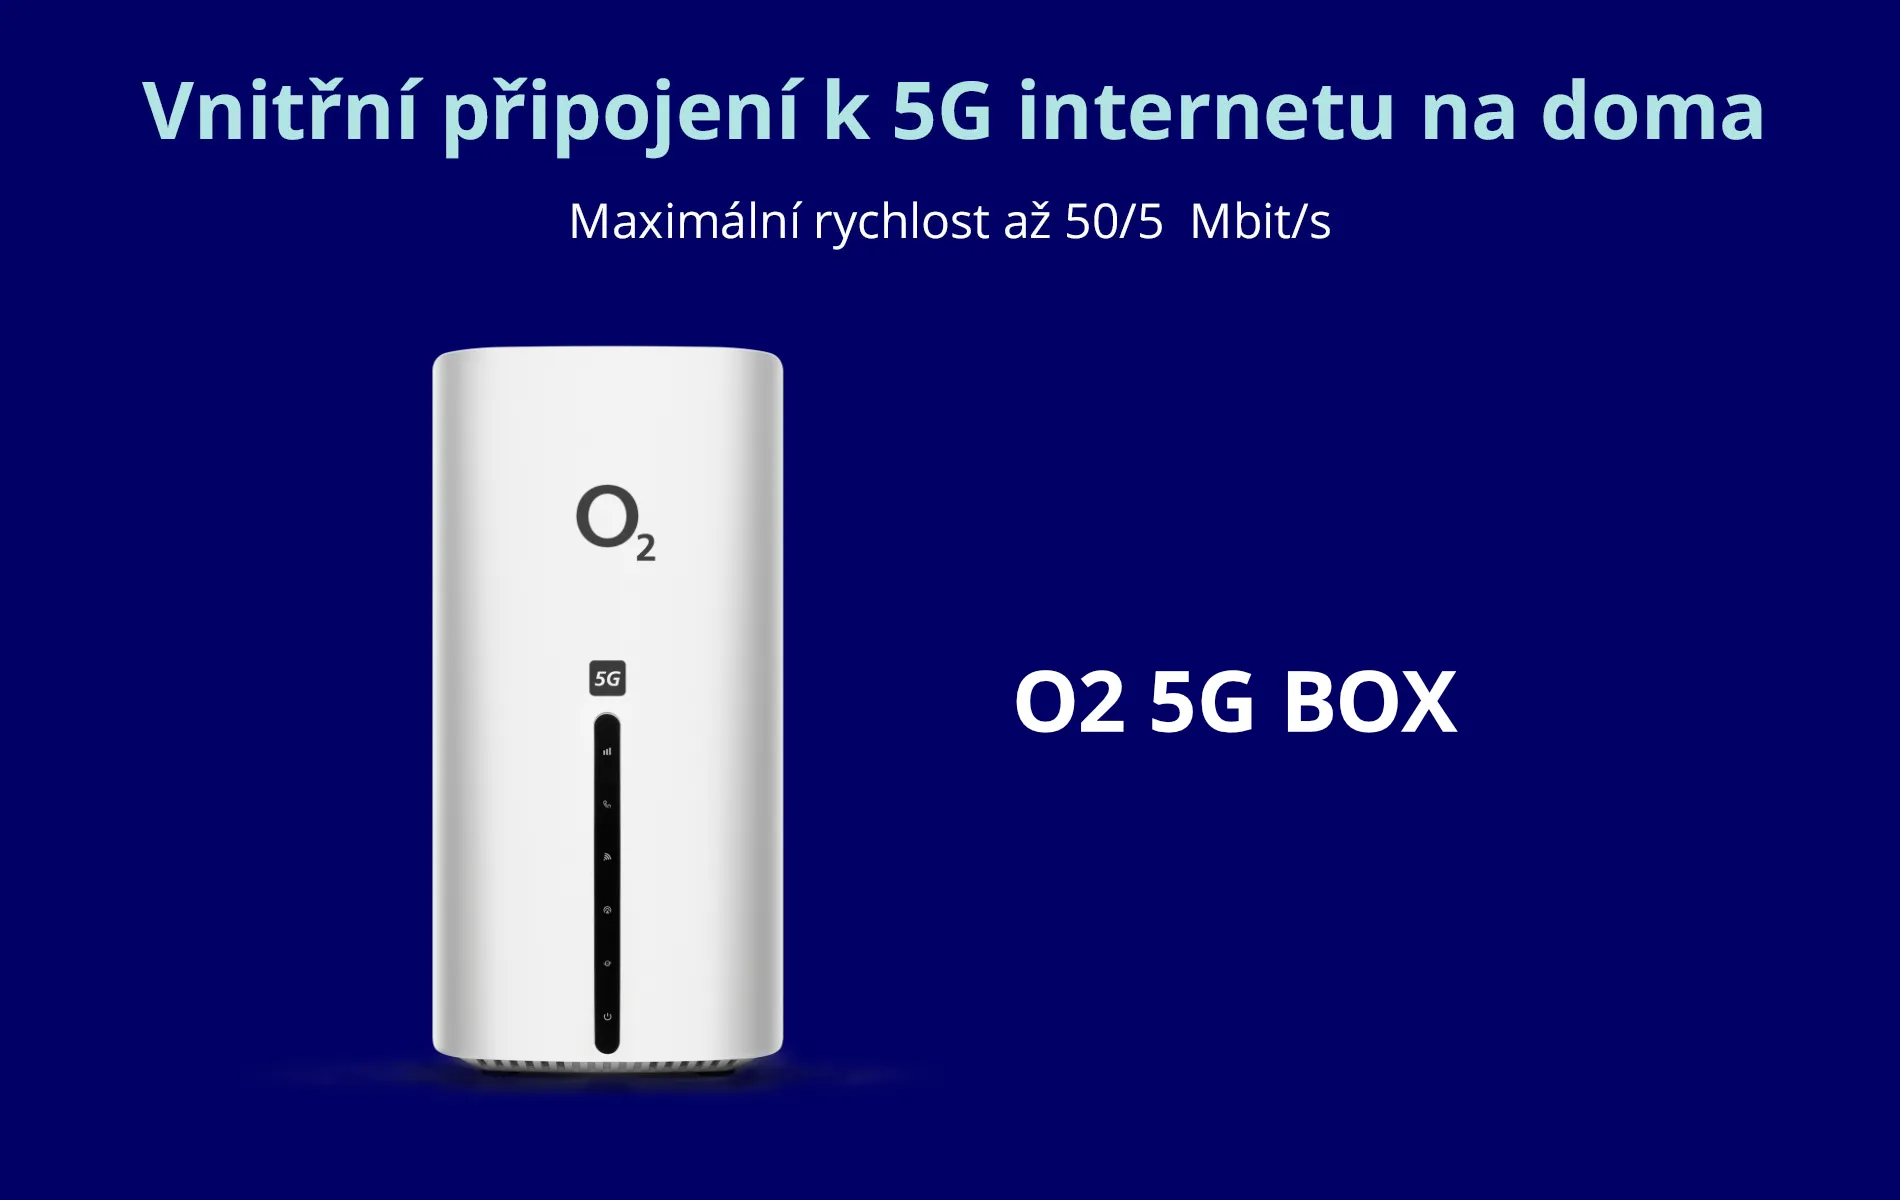 O2 5G BOX